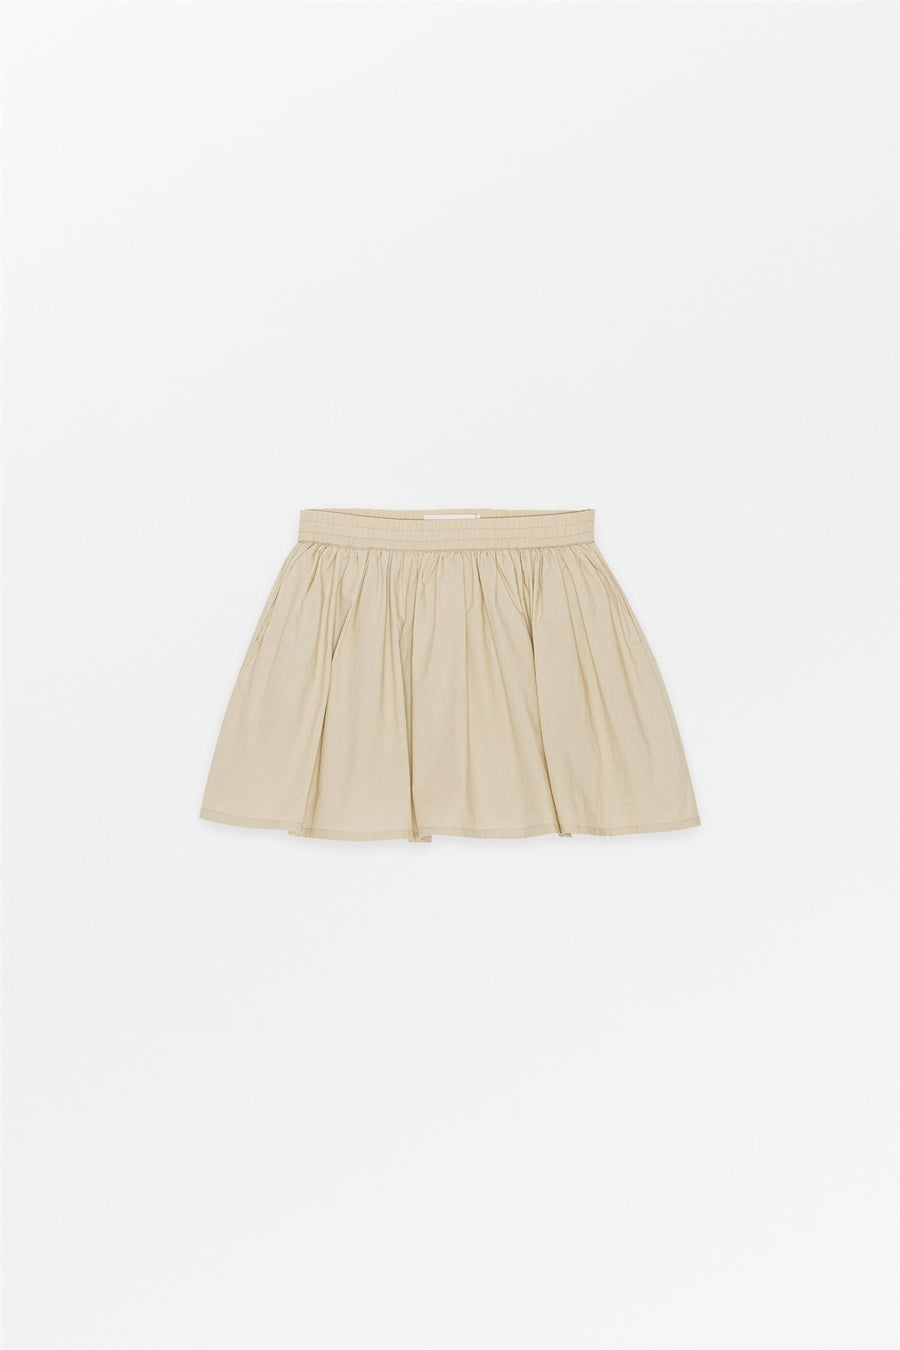 Musling Flora Skirt